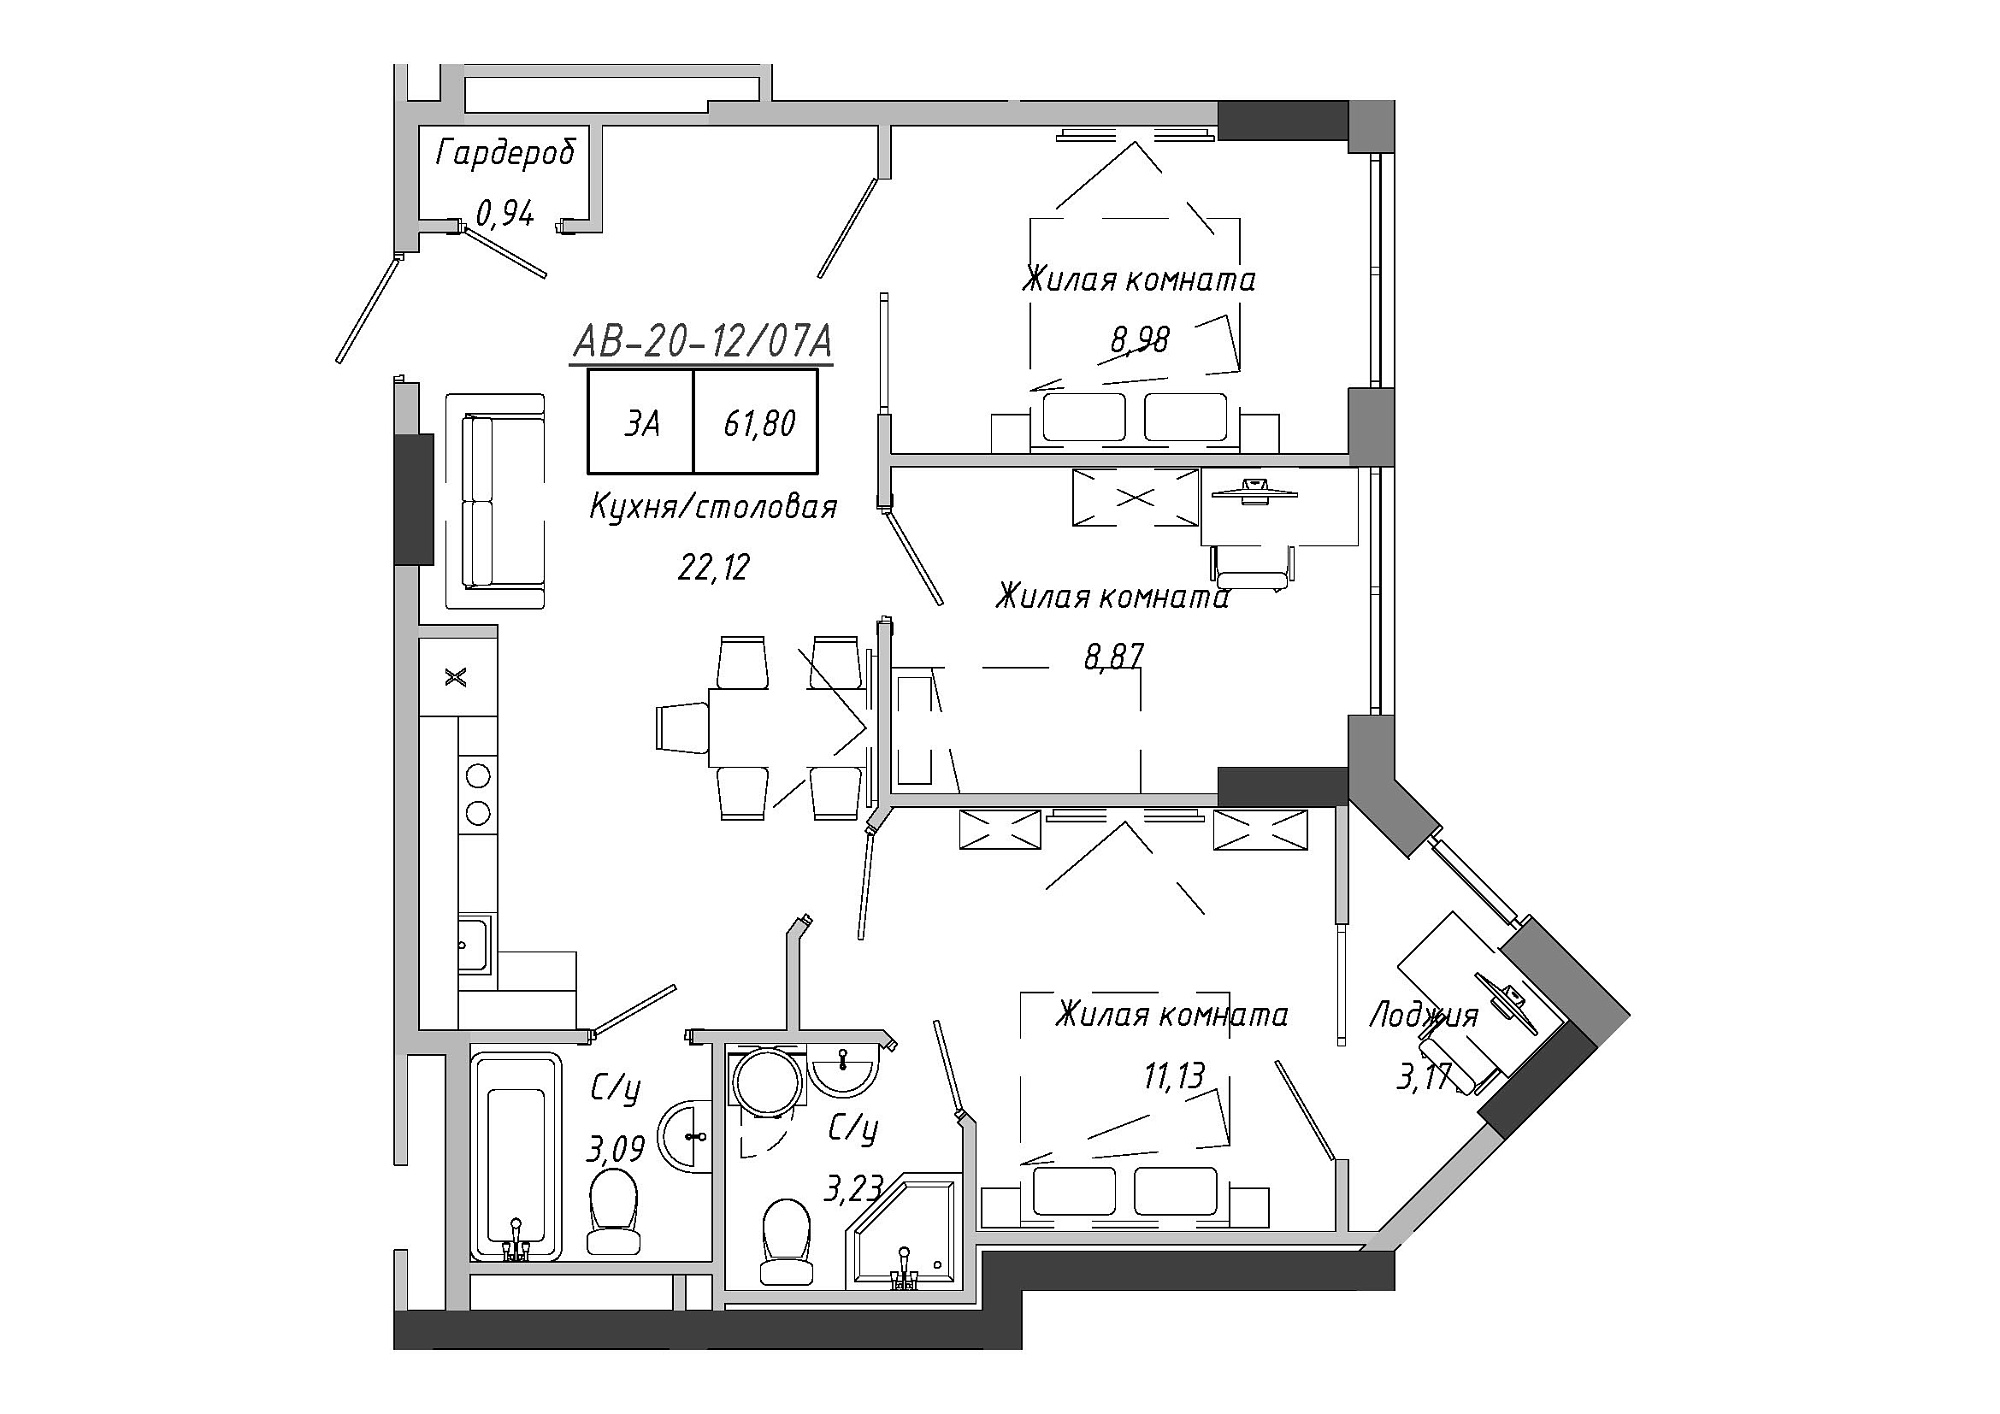 Планировка 3-к квартира площей 62.67м2, AB-20-12/0007а.